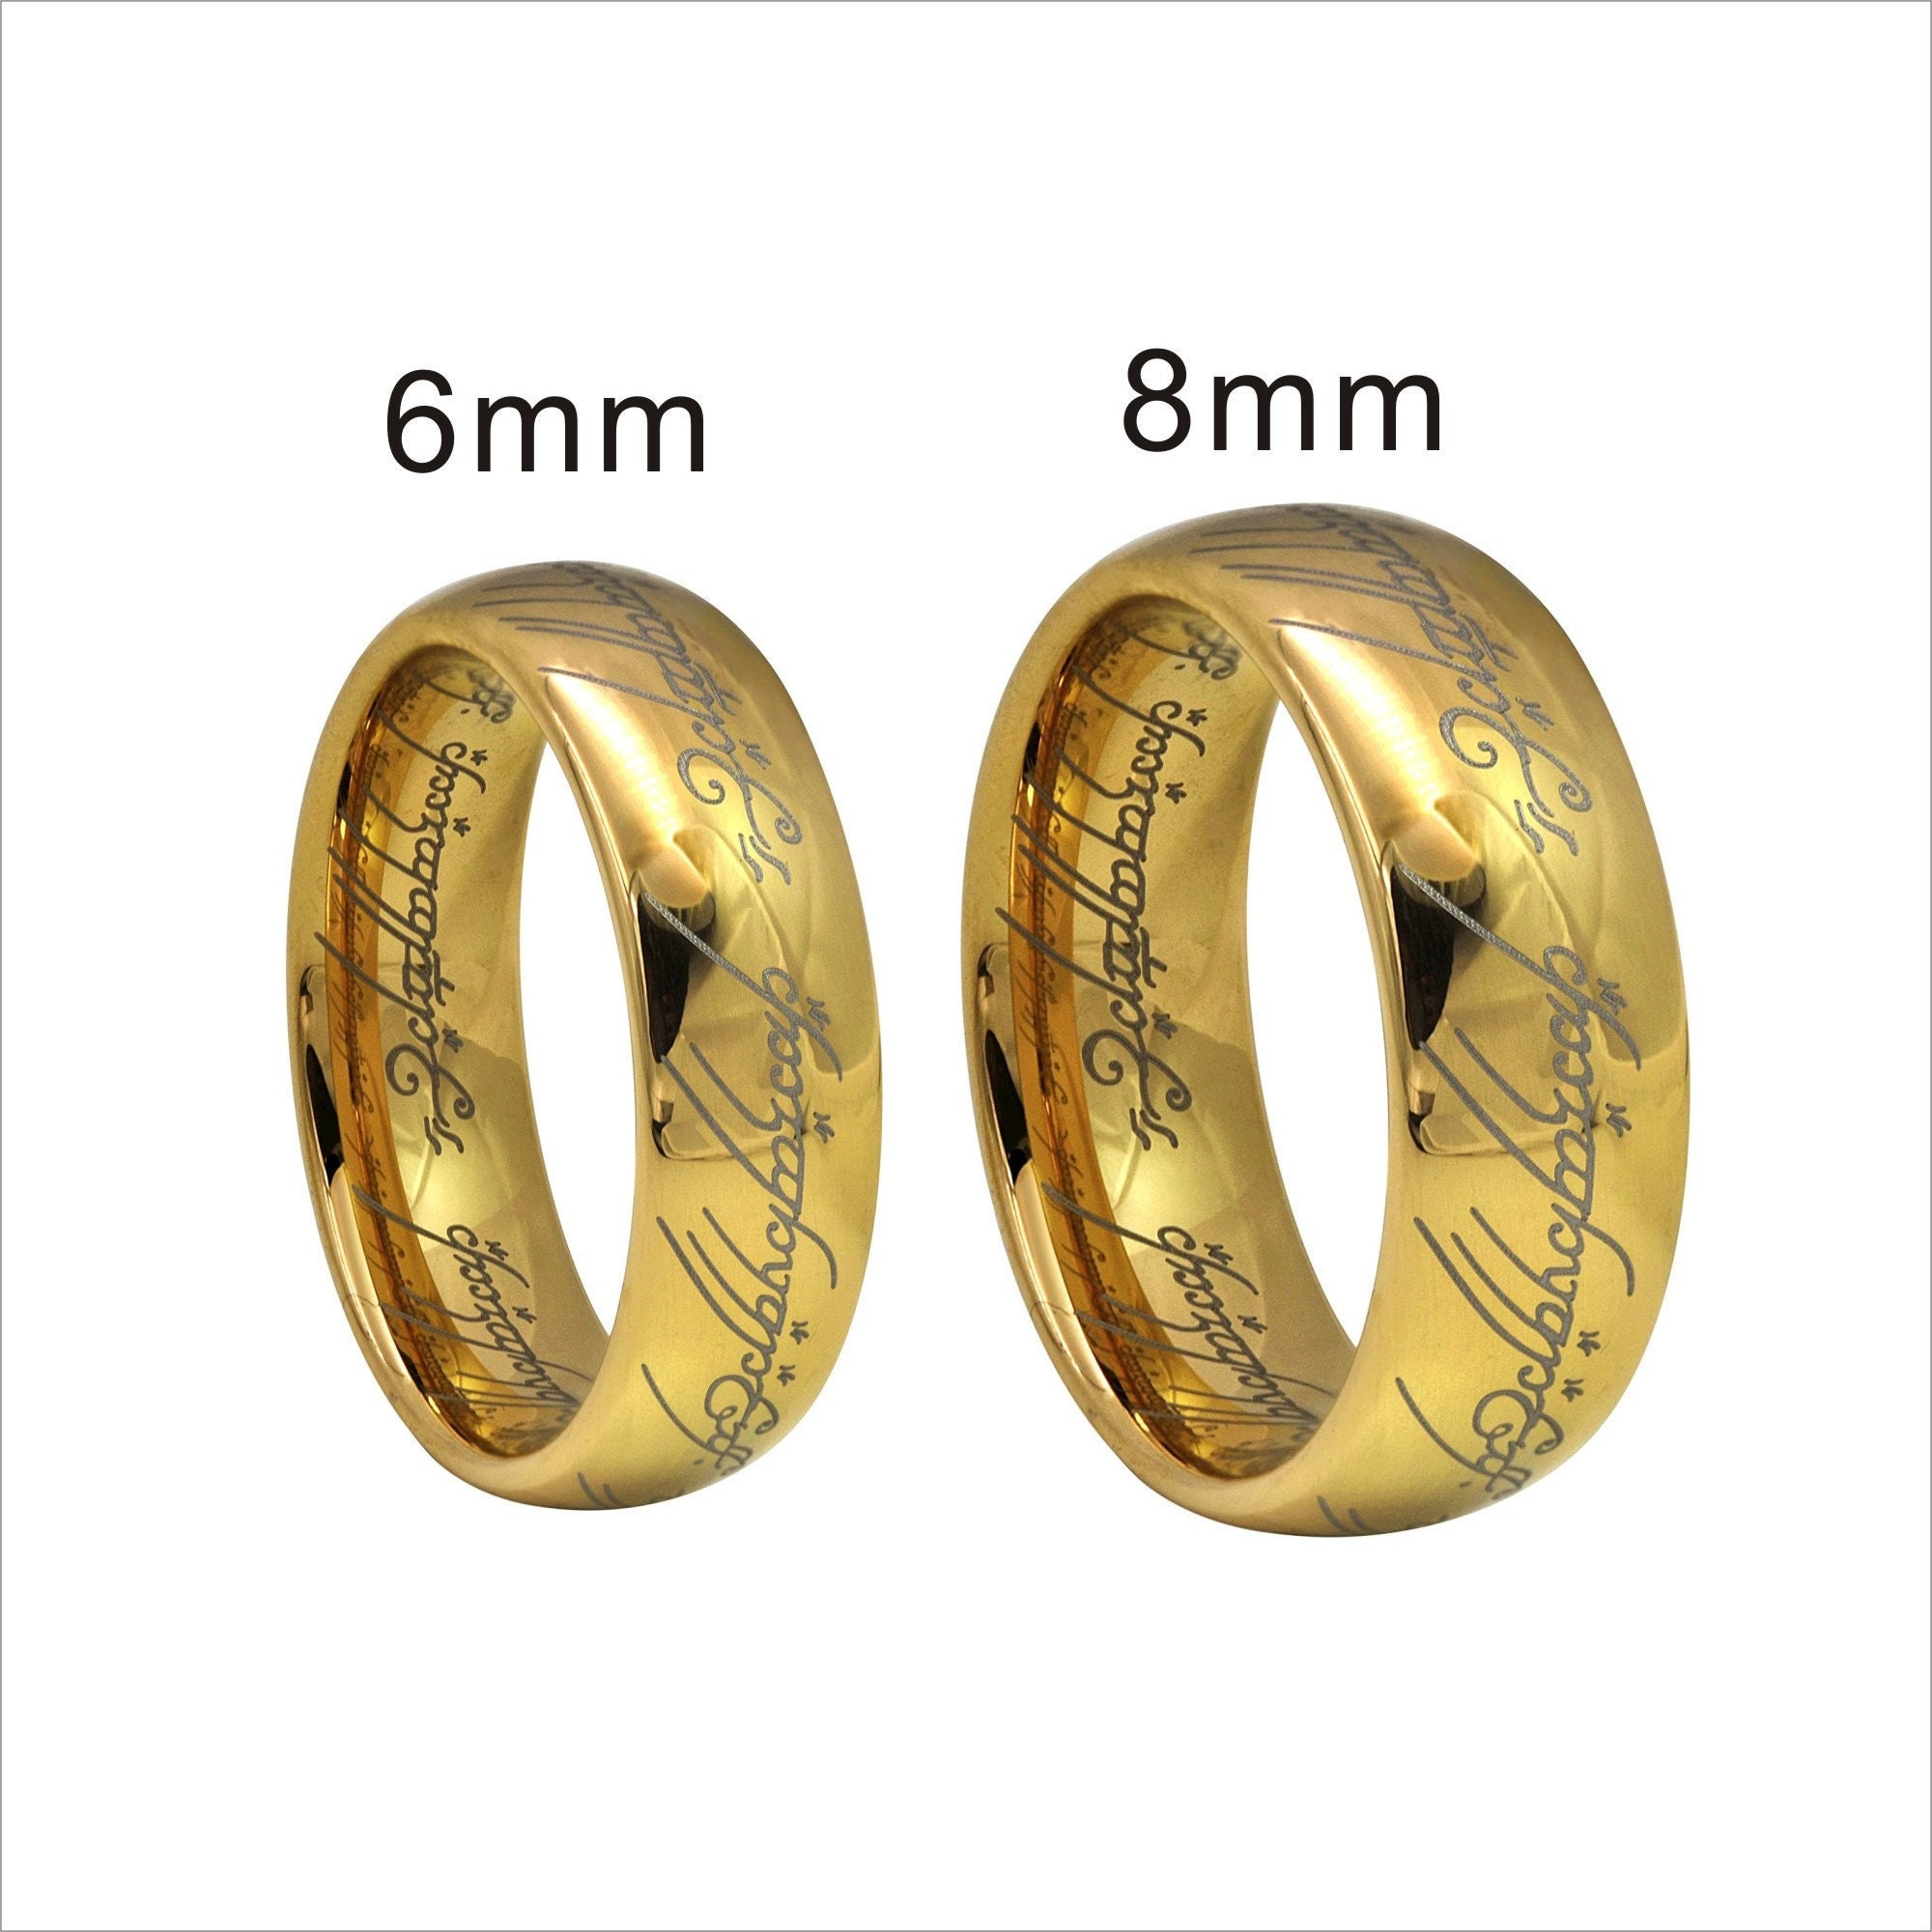 Verheugen berouw hebben sympathie Gold Lord of Ring Tungsten Band Wedding Engagement Tungsten - Etsy